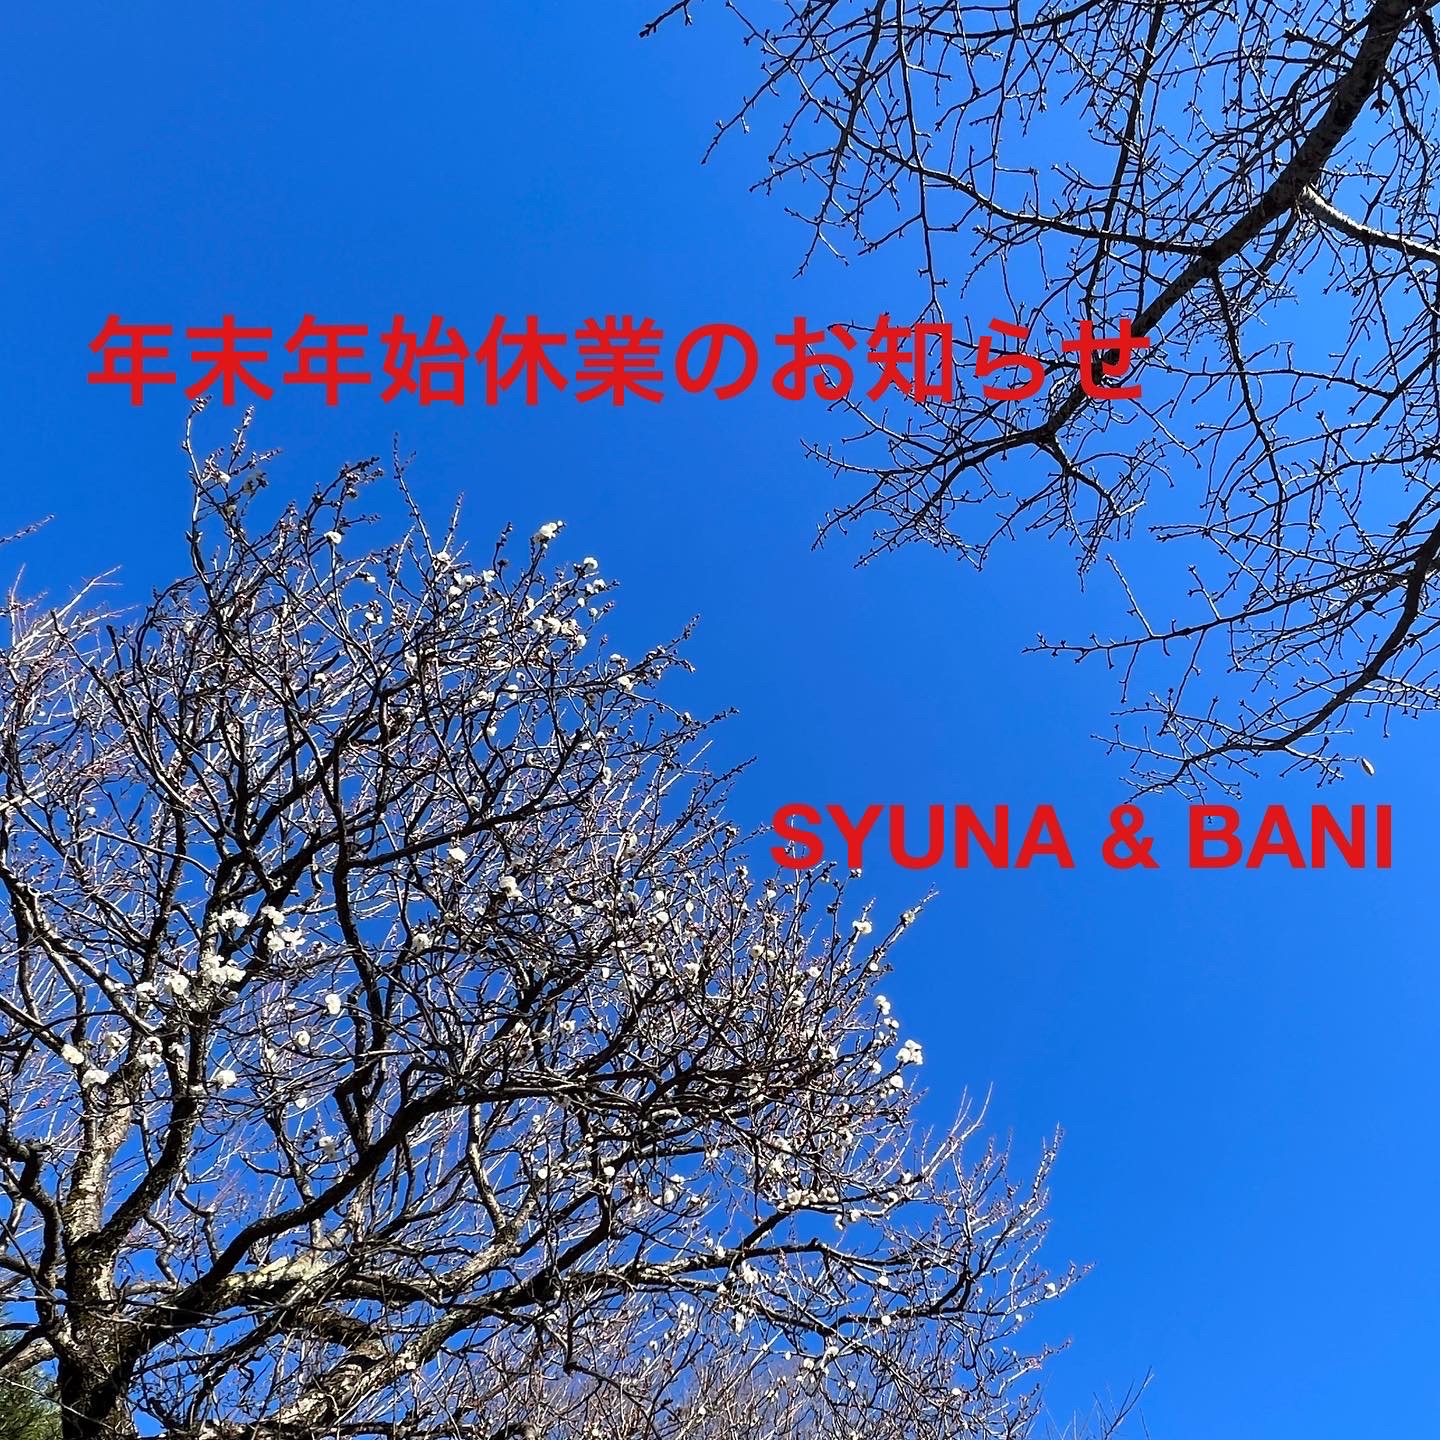 http://syuna-bani.net/blog/40AC4DE5-73D0-4E45-834B-6E2DC18FB268.JPG